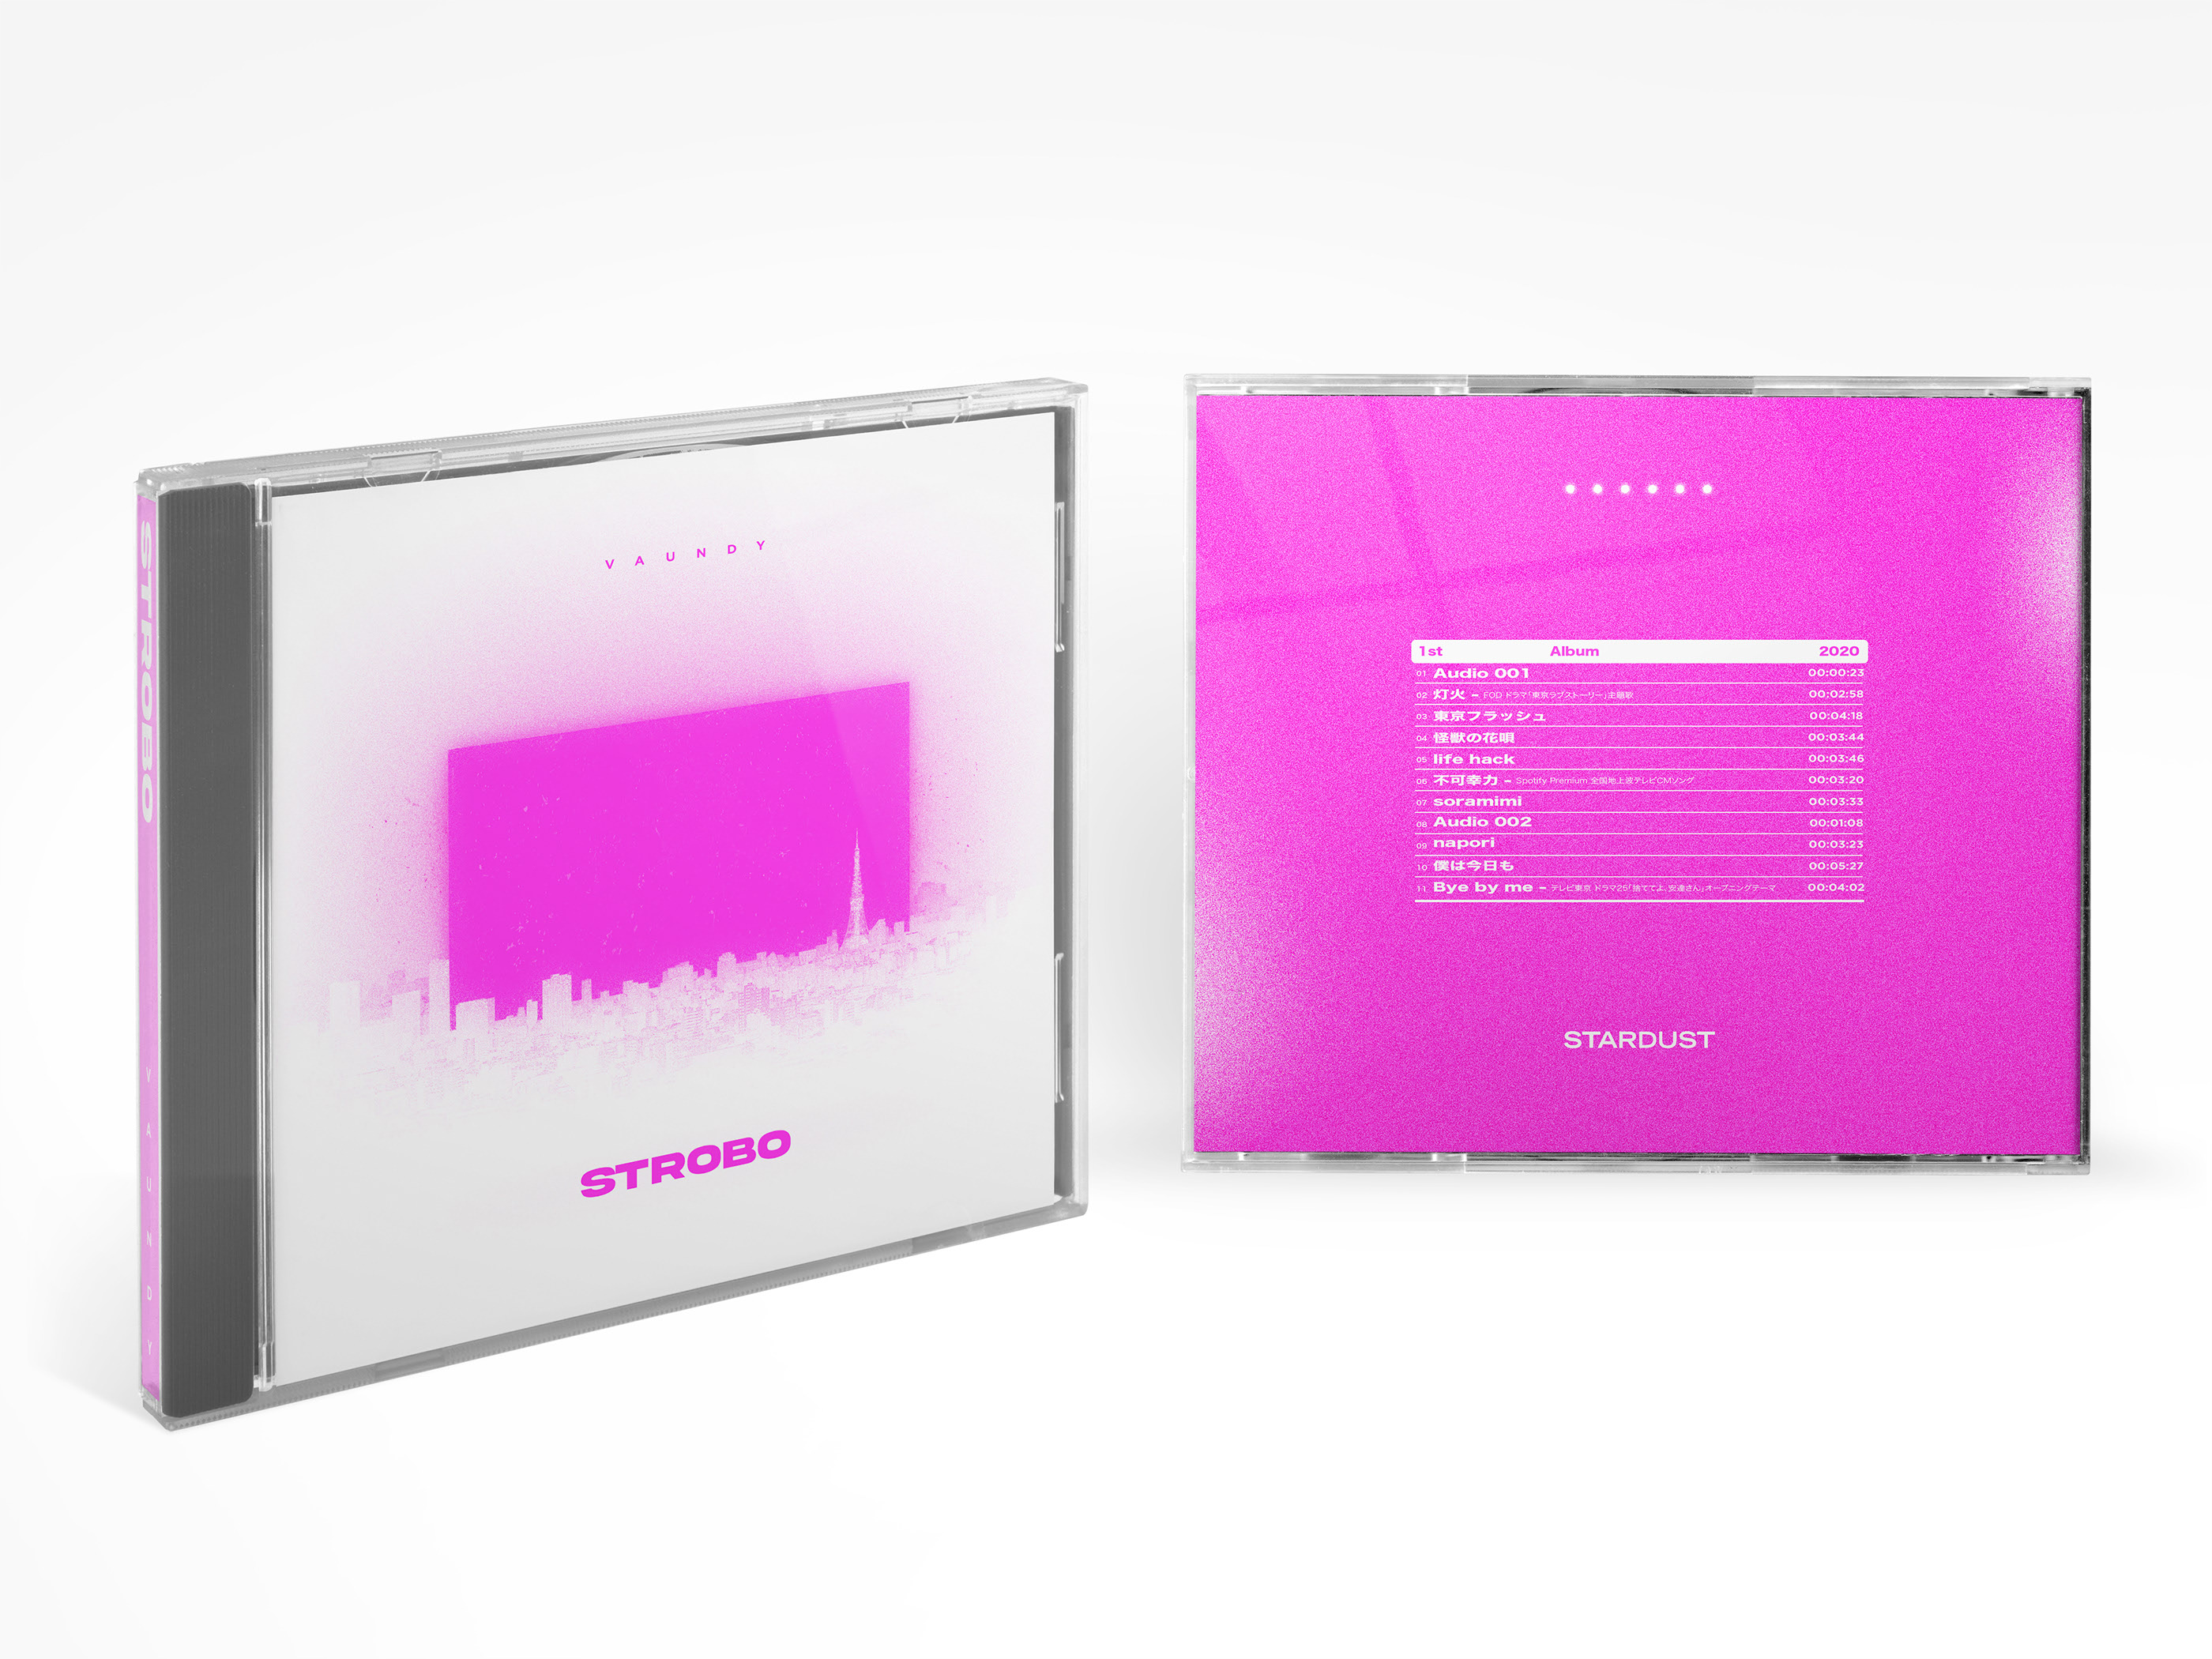 Vaundy - 1st album 'STROBO'] on Behance